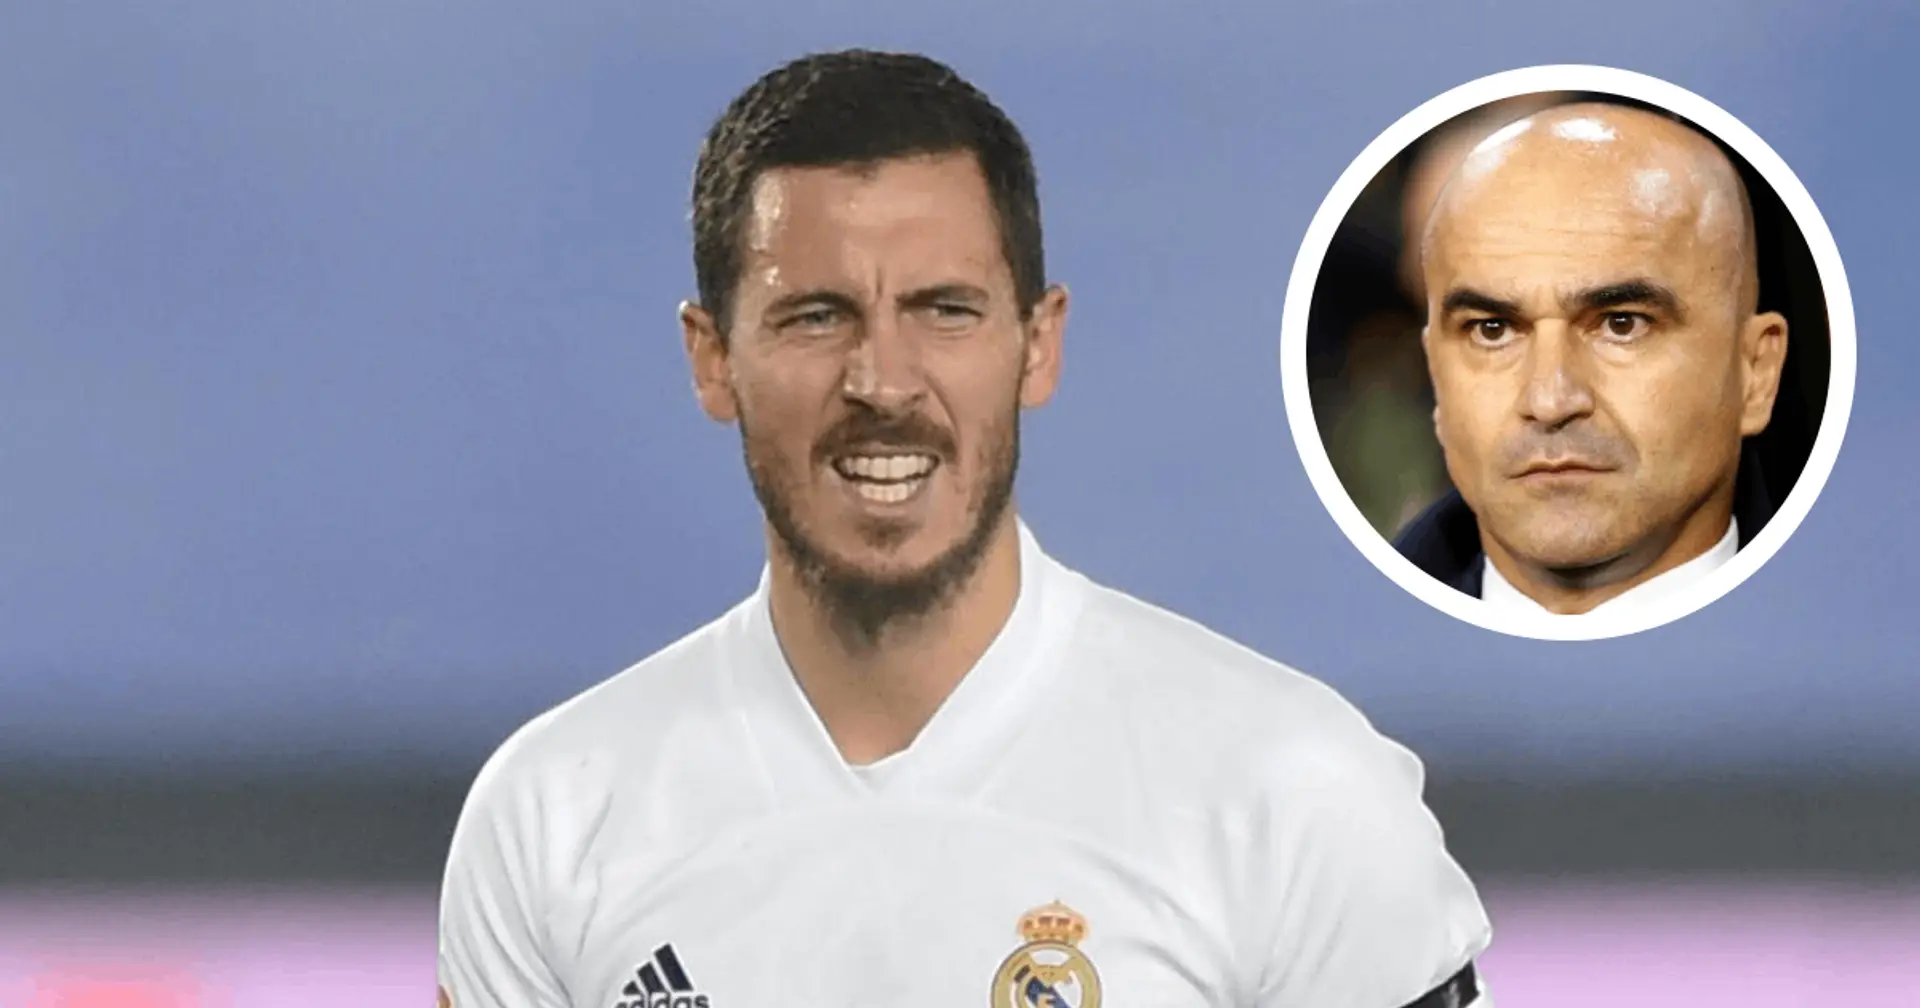 Le sélectionneur de la Belgique: Eden Hazard a "désespérément besoin d'être de retour sur le terrain"